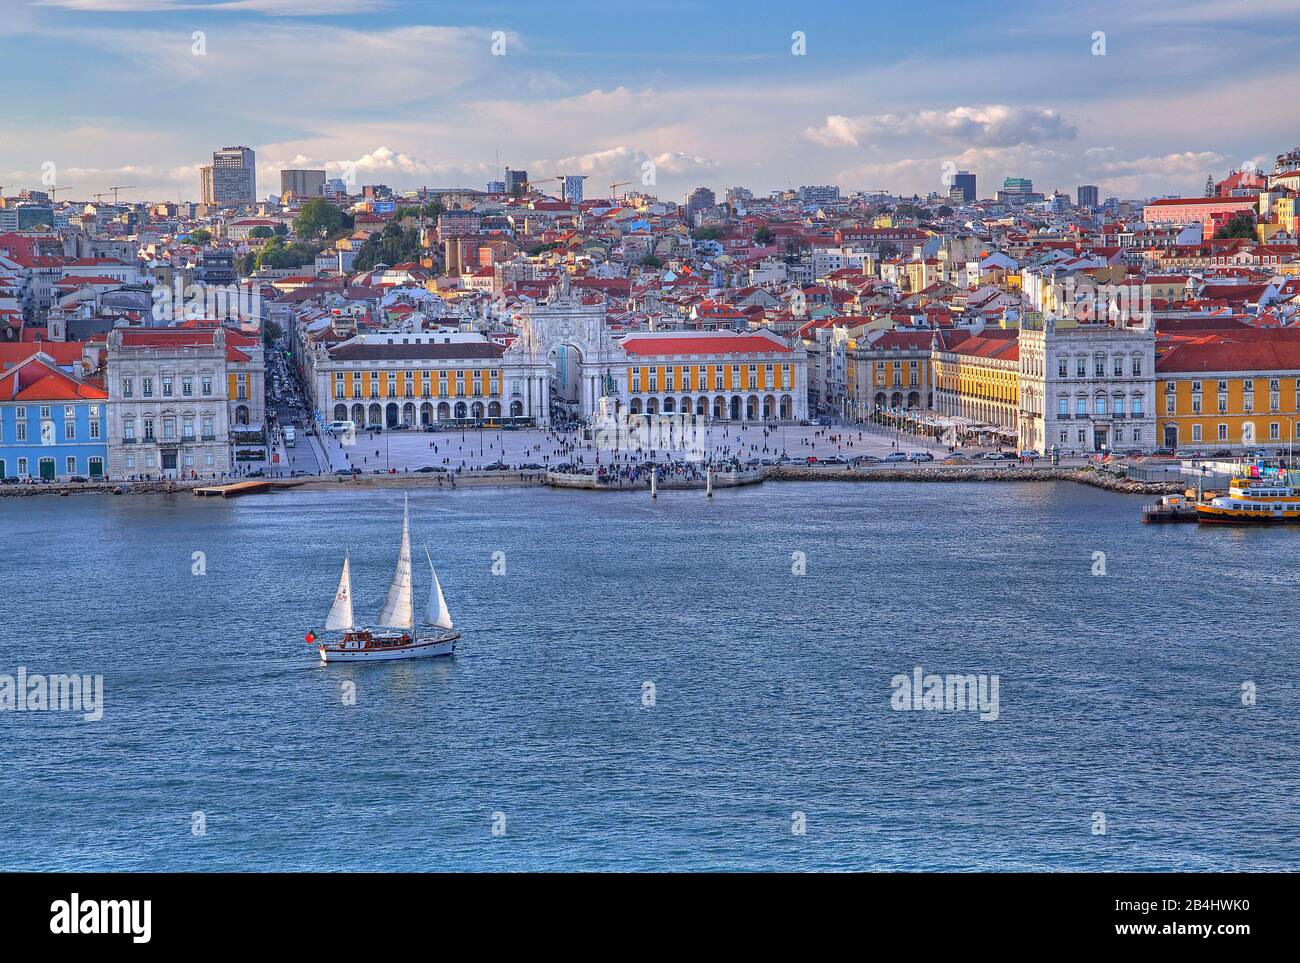 Bord de mer de la ville sur le Tejo avec la place Praca do Comercio dans le centre, Lisbonne, Portugal Banque D'Images